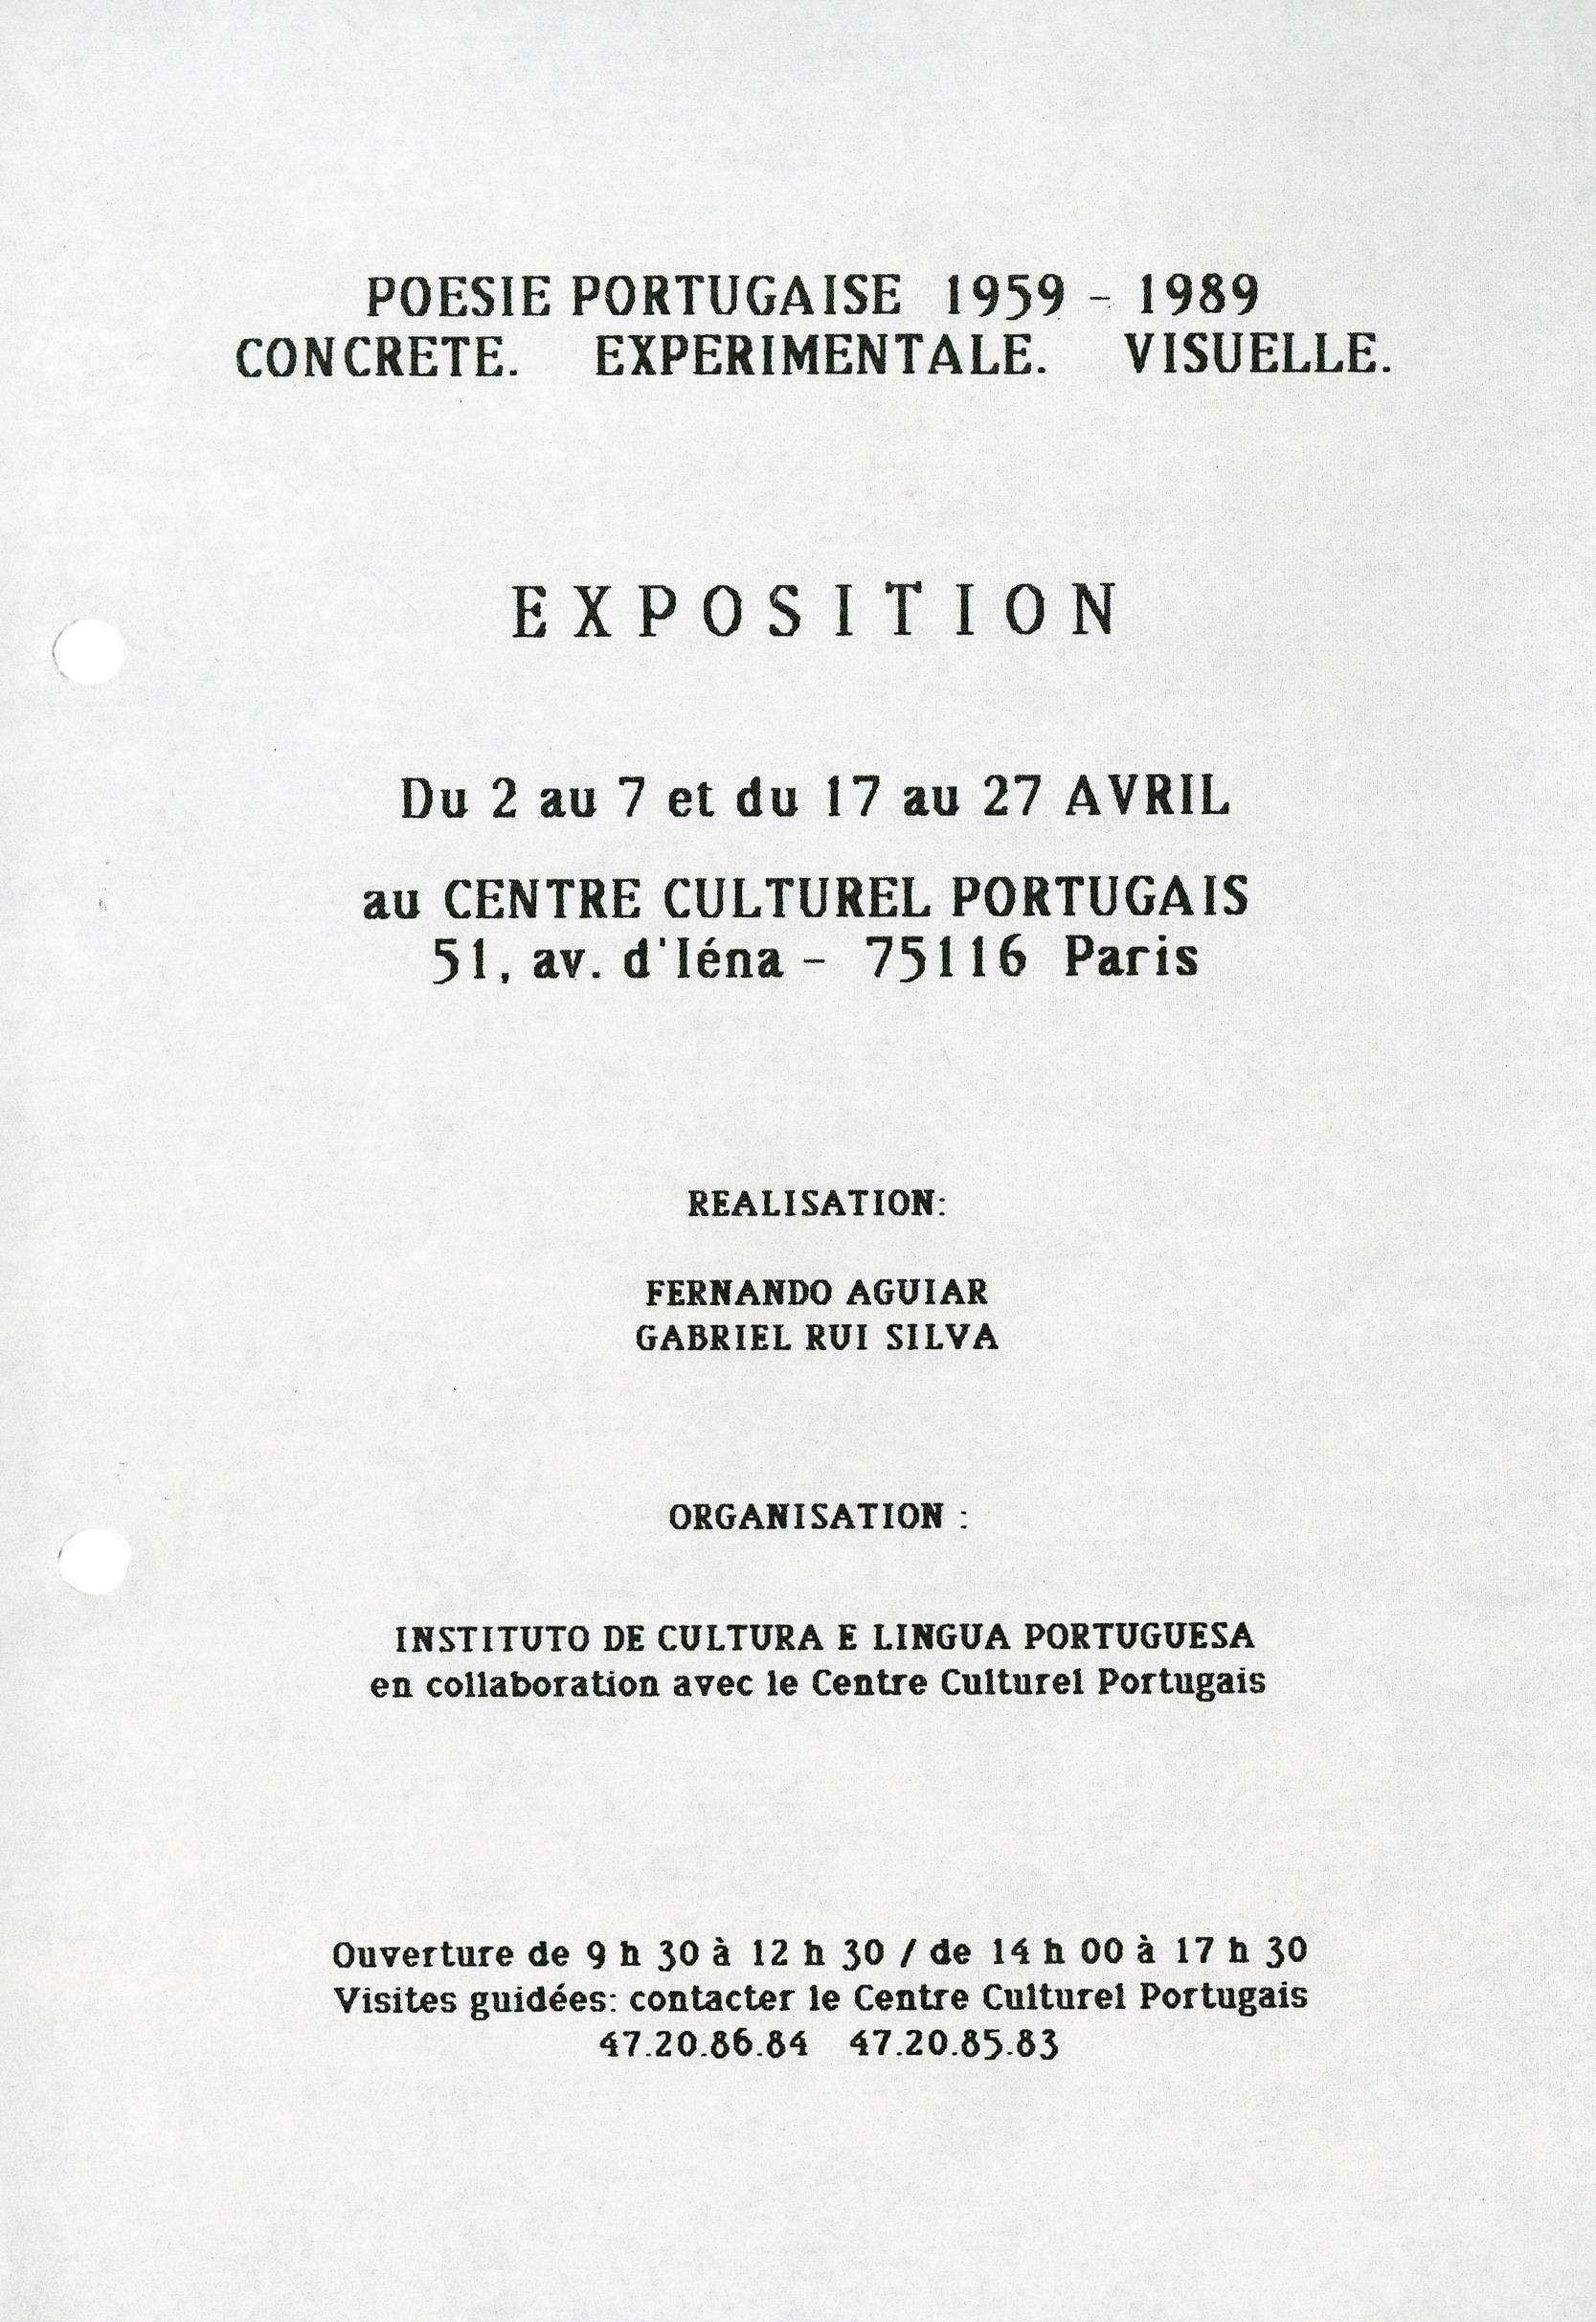 Concrete. Experimentale. Visuelle. Poesie Portugaise, 1959 – 1989